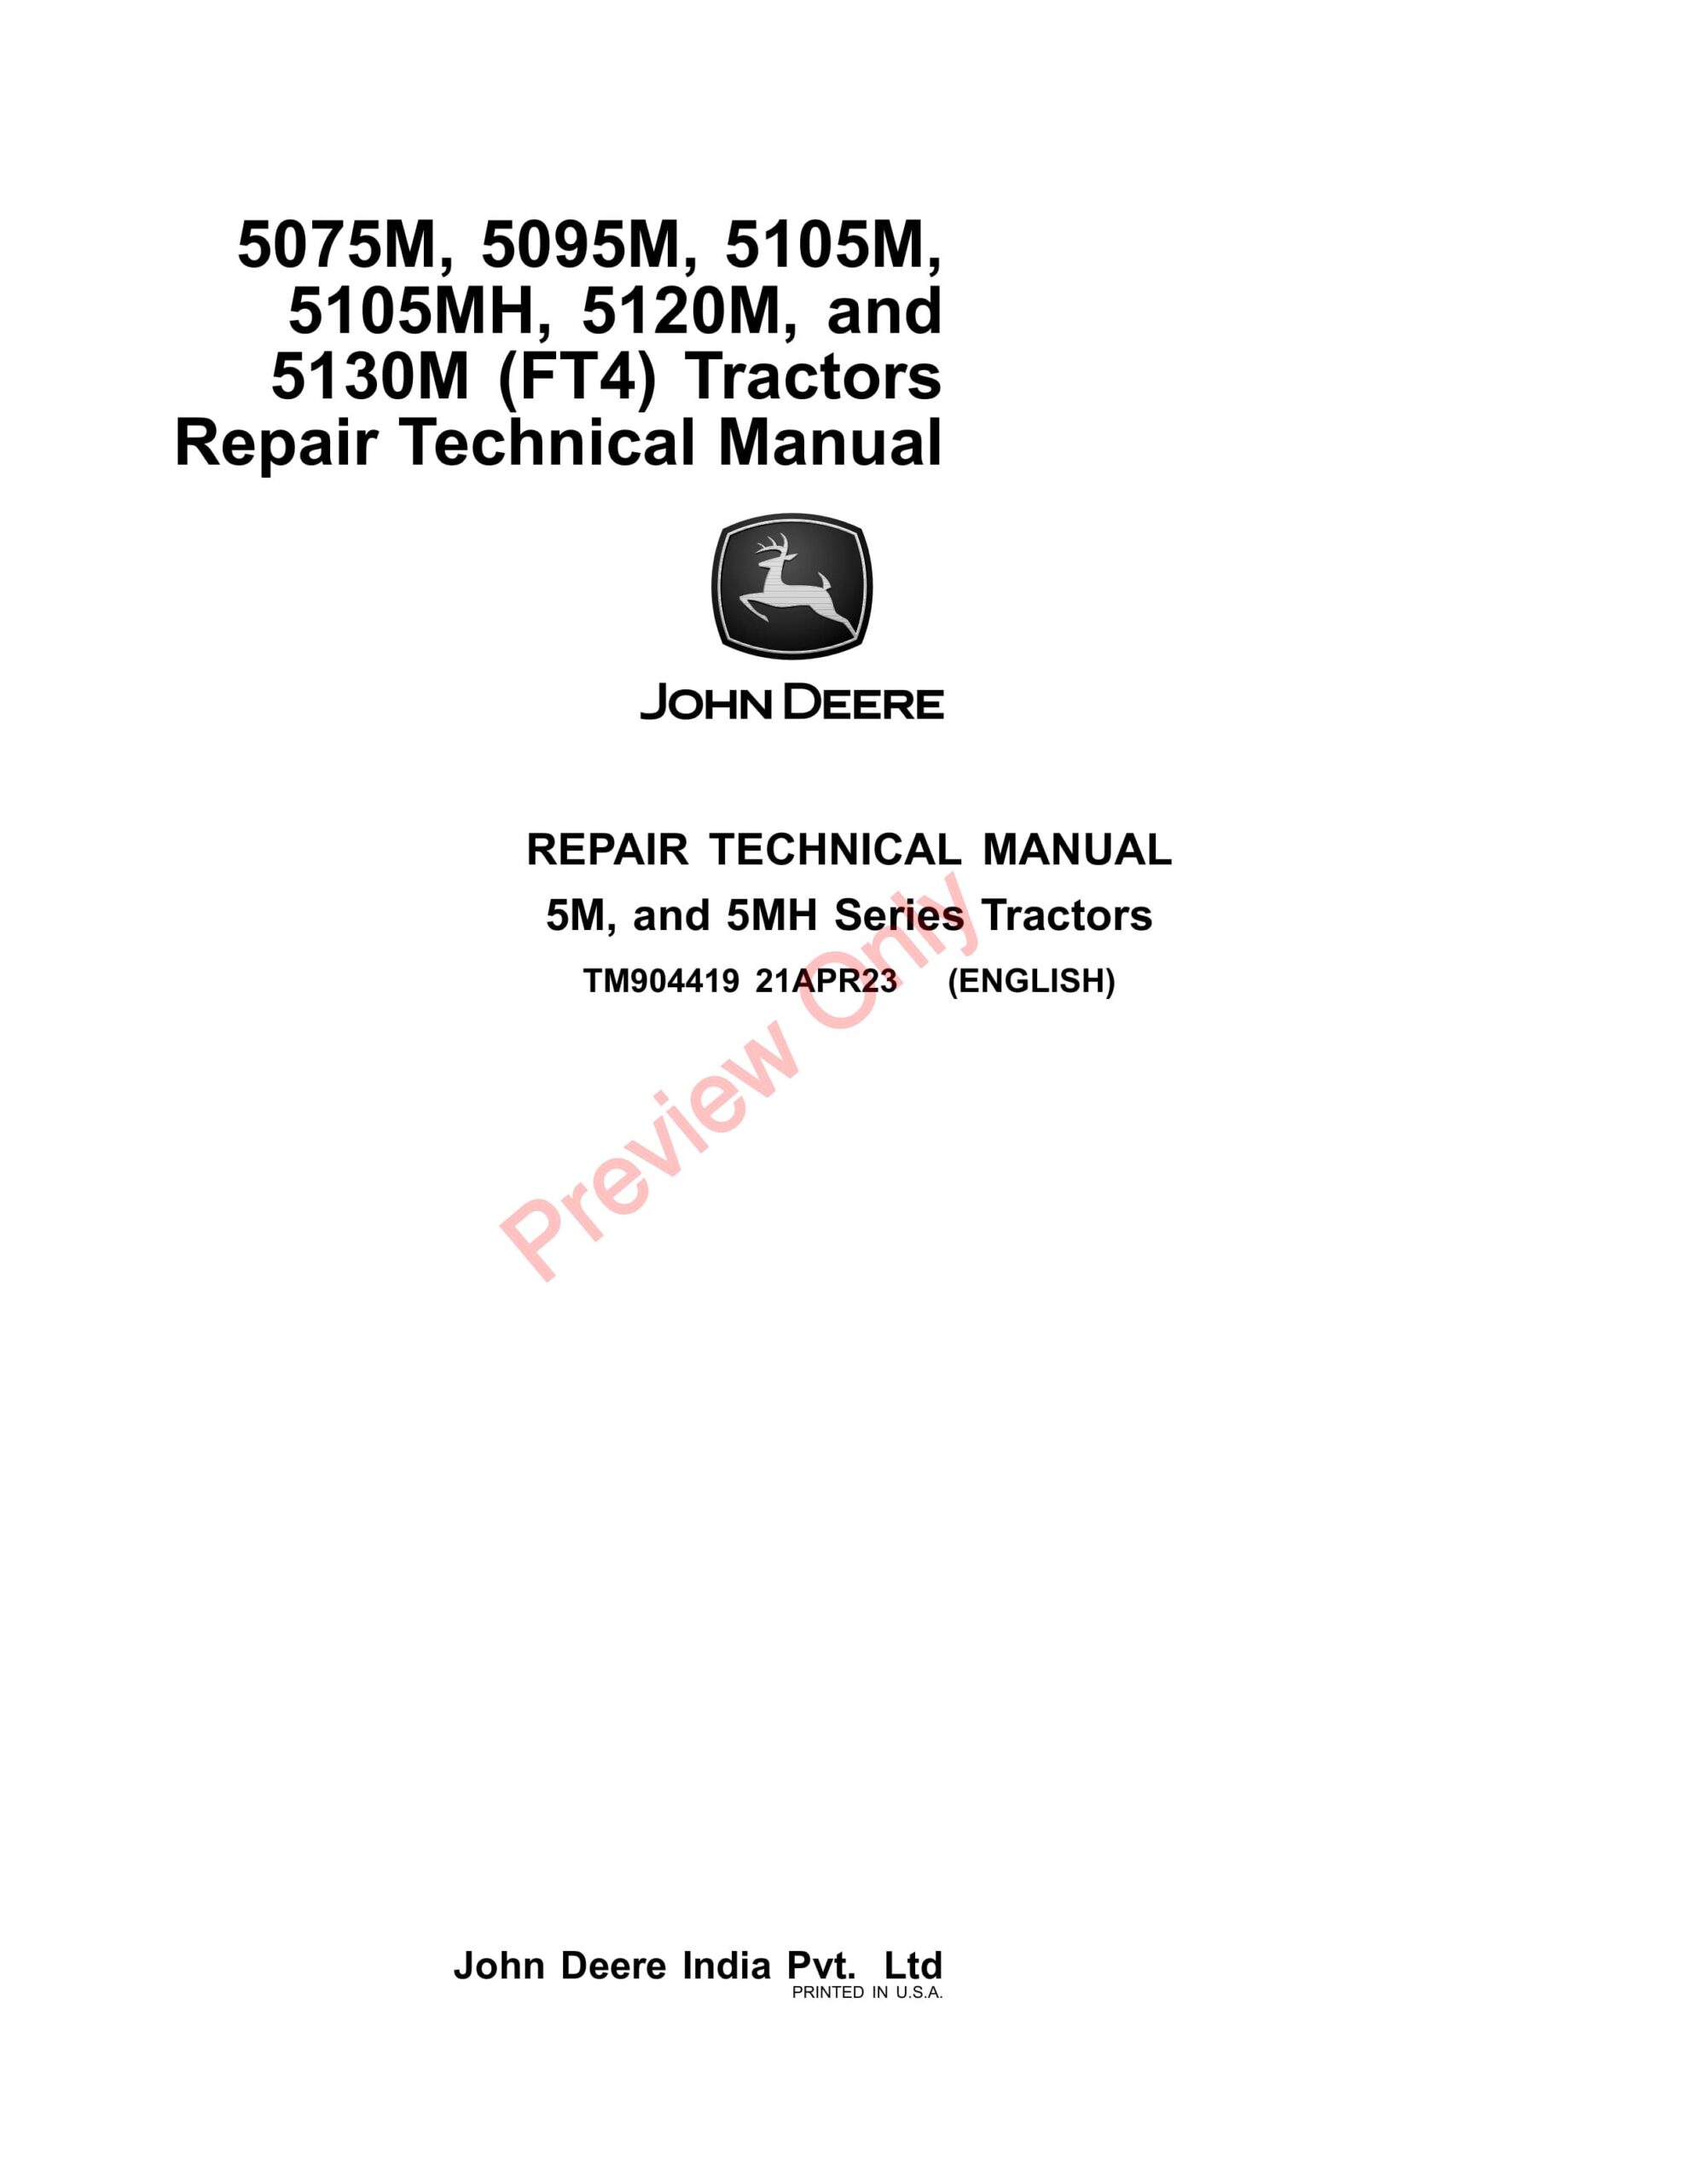 John Deere 5075M, 5095M, 5105M, 5105MH, and 5120M (FT4) Tractors Repair Technical Manual TM904419 21APR23-1